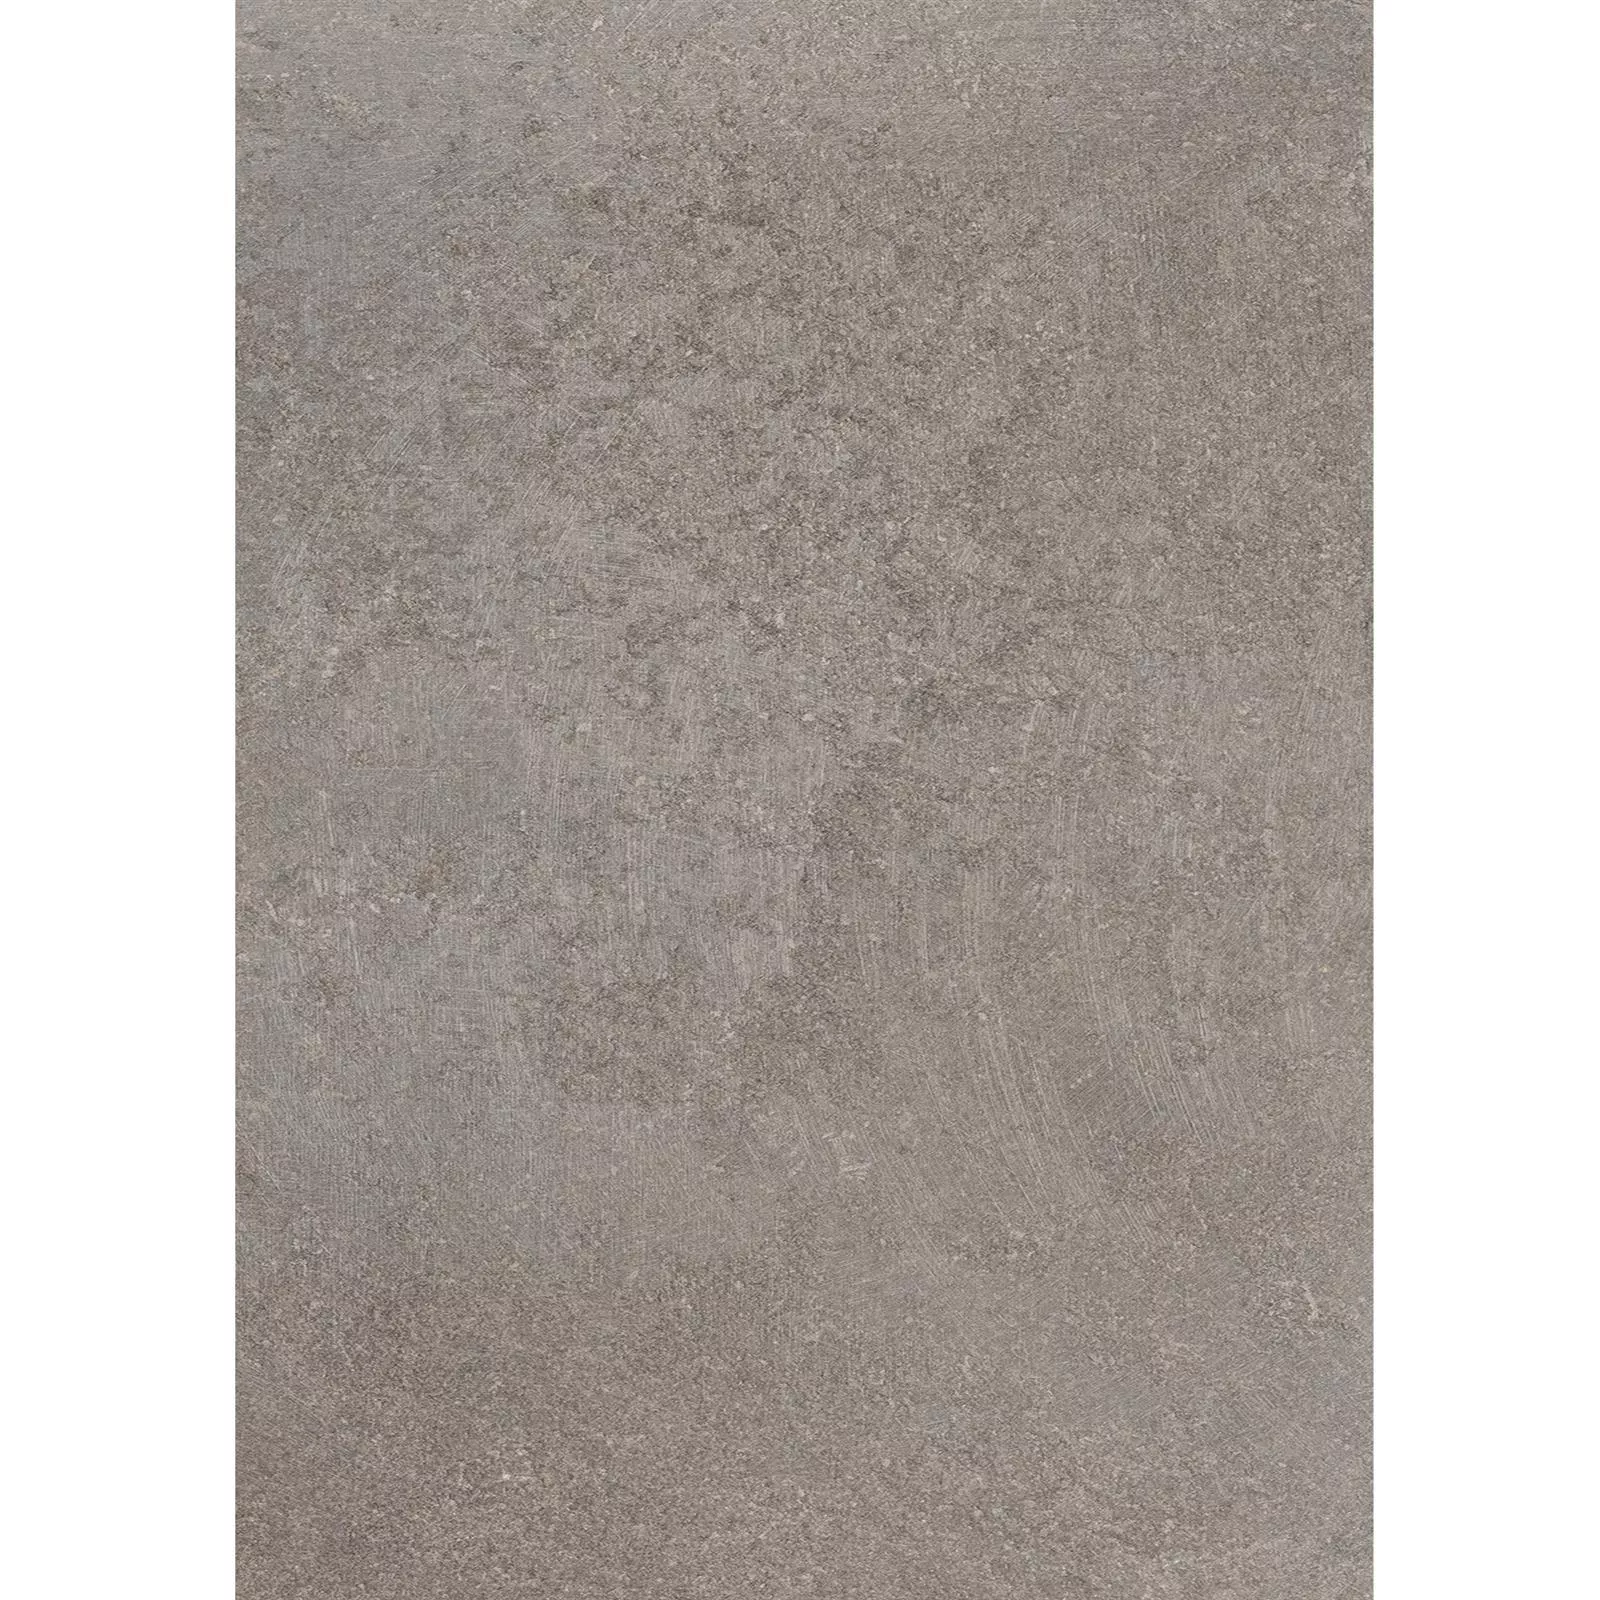 Padrão Ladrilhos Olhar de Pedra Horizon Marrom 60x120cm